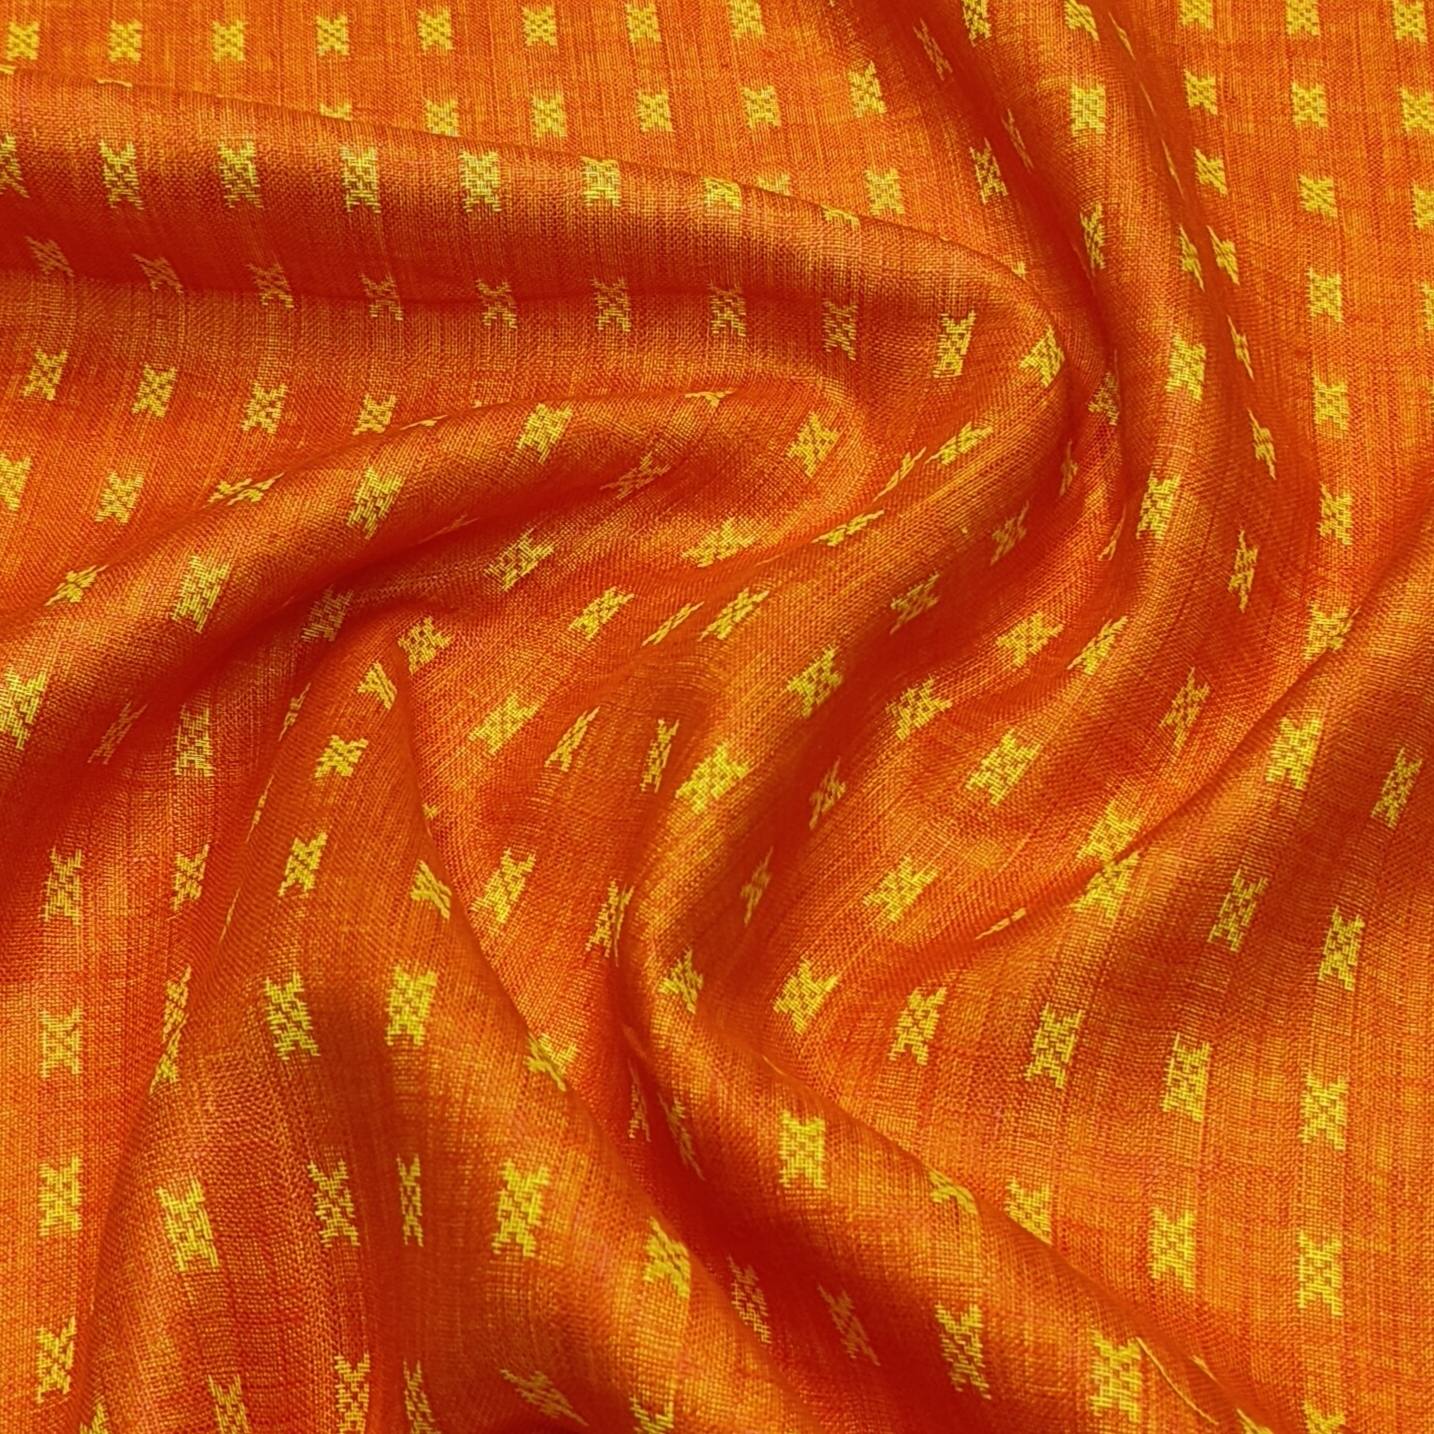 Solino 100% linen jackqurad Shirt Fabric Colour Orange